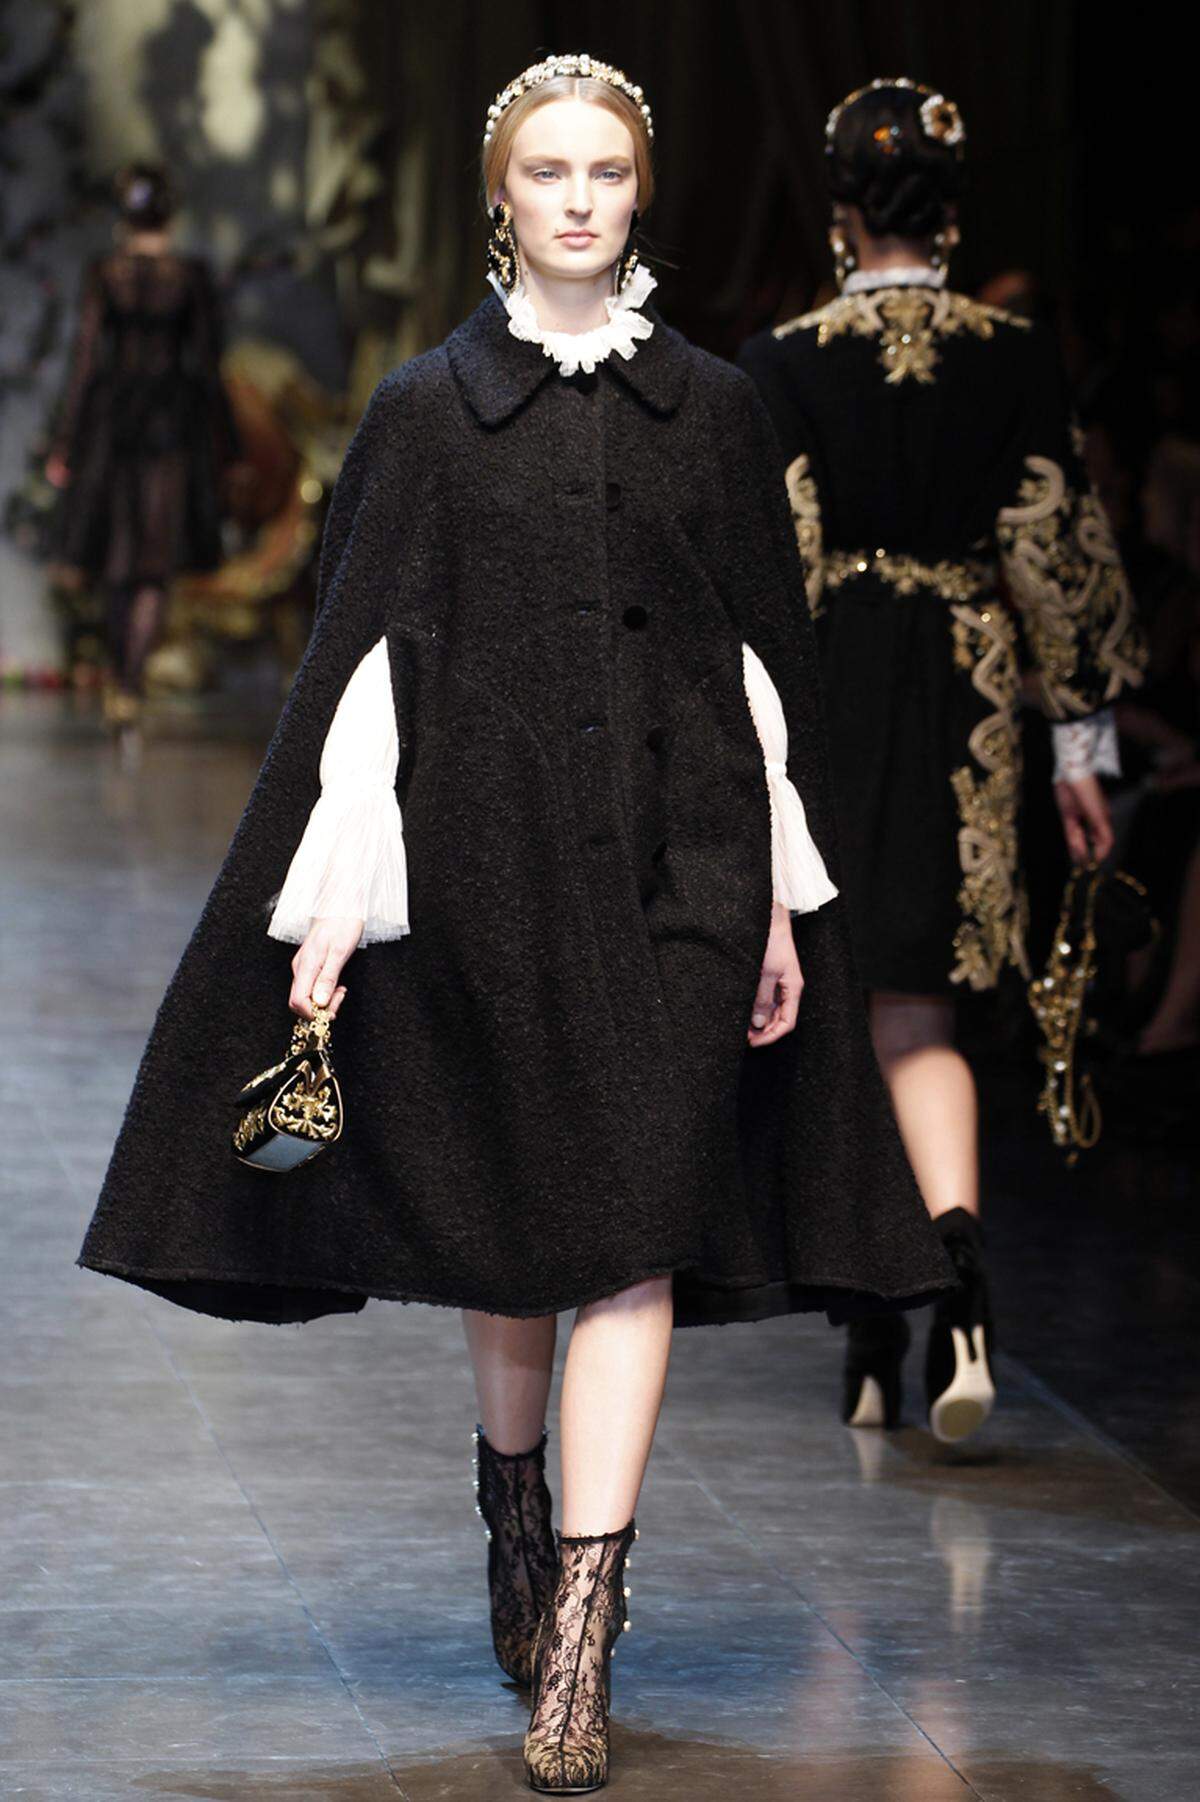 Da viele Schichten Kleidung aber nur schwer unter eine taillierte Winterjacke passen, empfiehlt es sich zu einem Umhang zu greifen, wie ihn etwa Dolce &amp; Gabbana in ihrer Kollektion haben.